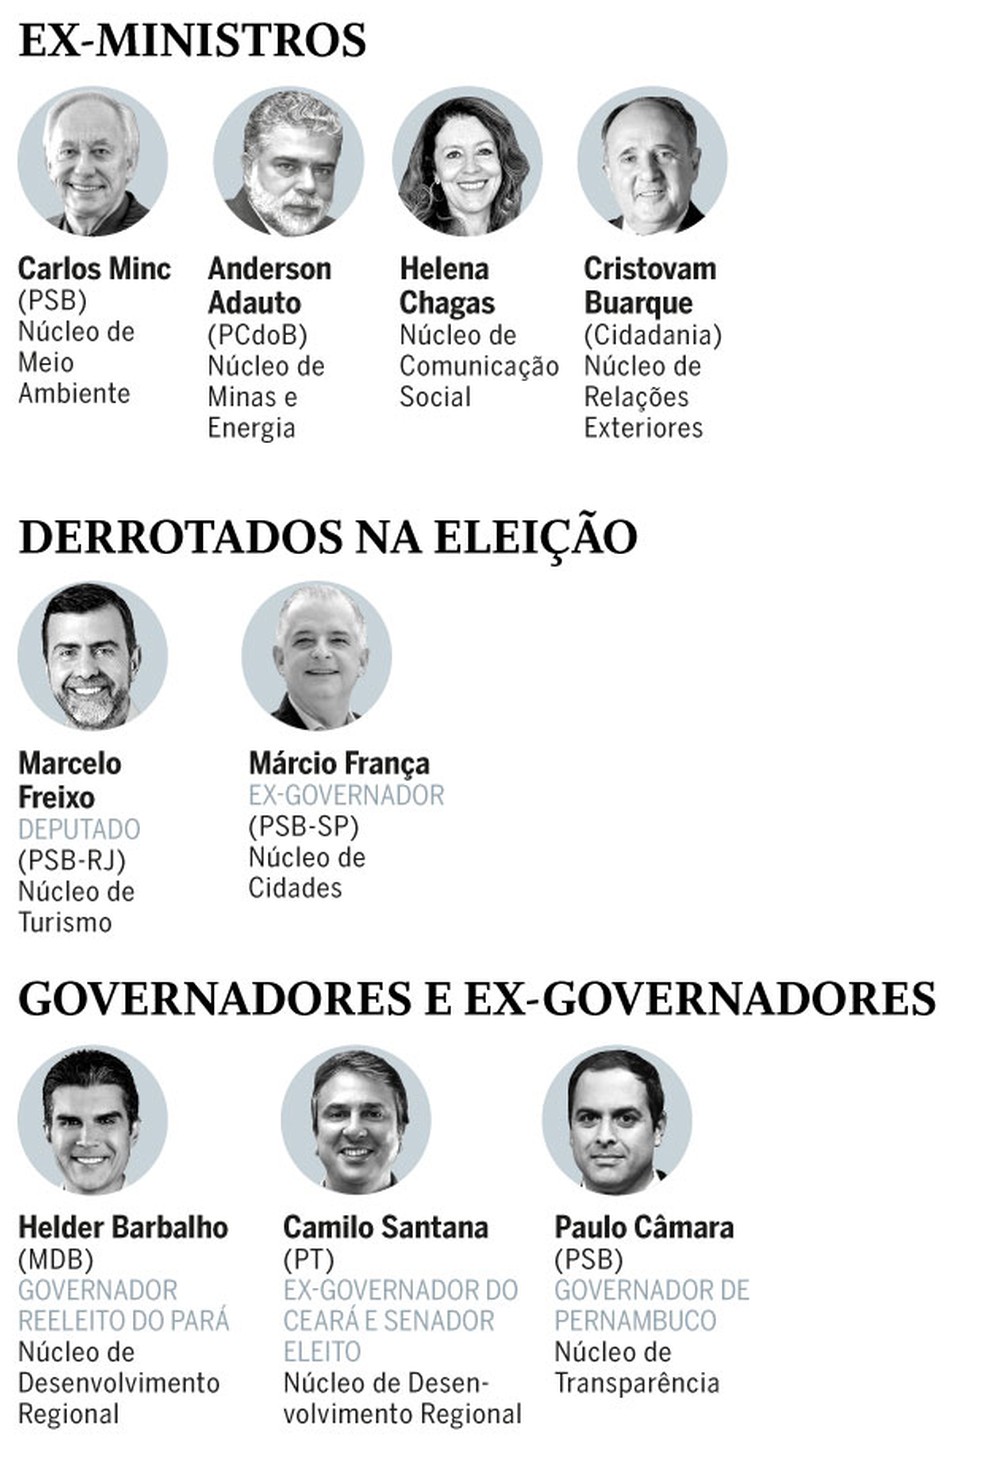 Ex-ministros, derrotados na eleiÃ§Ã£o e ex-governadores estÃ£o entre os contemplados â Foto: Arte/infografia